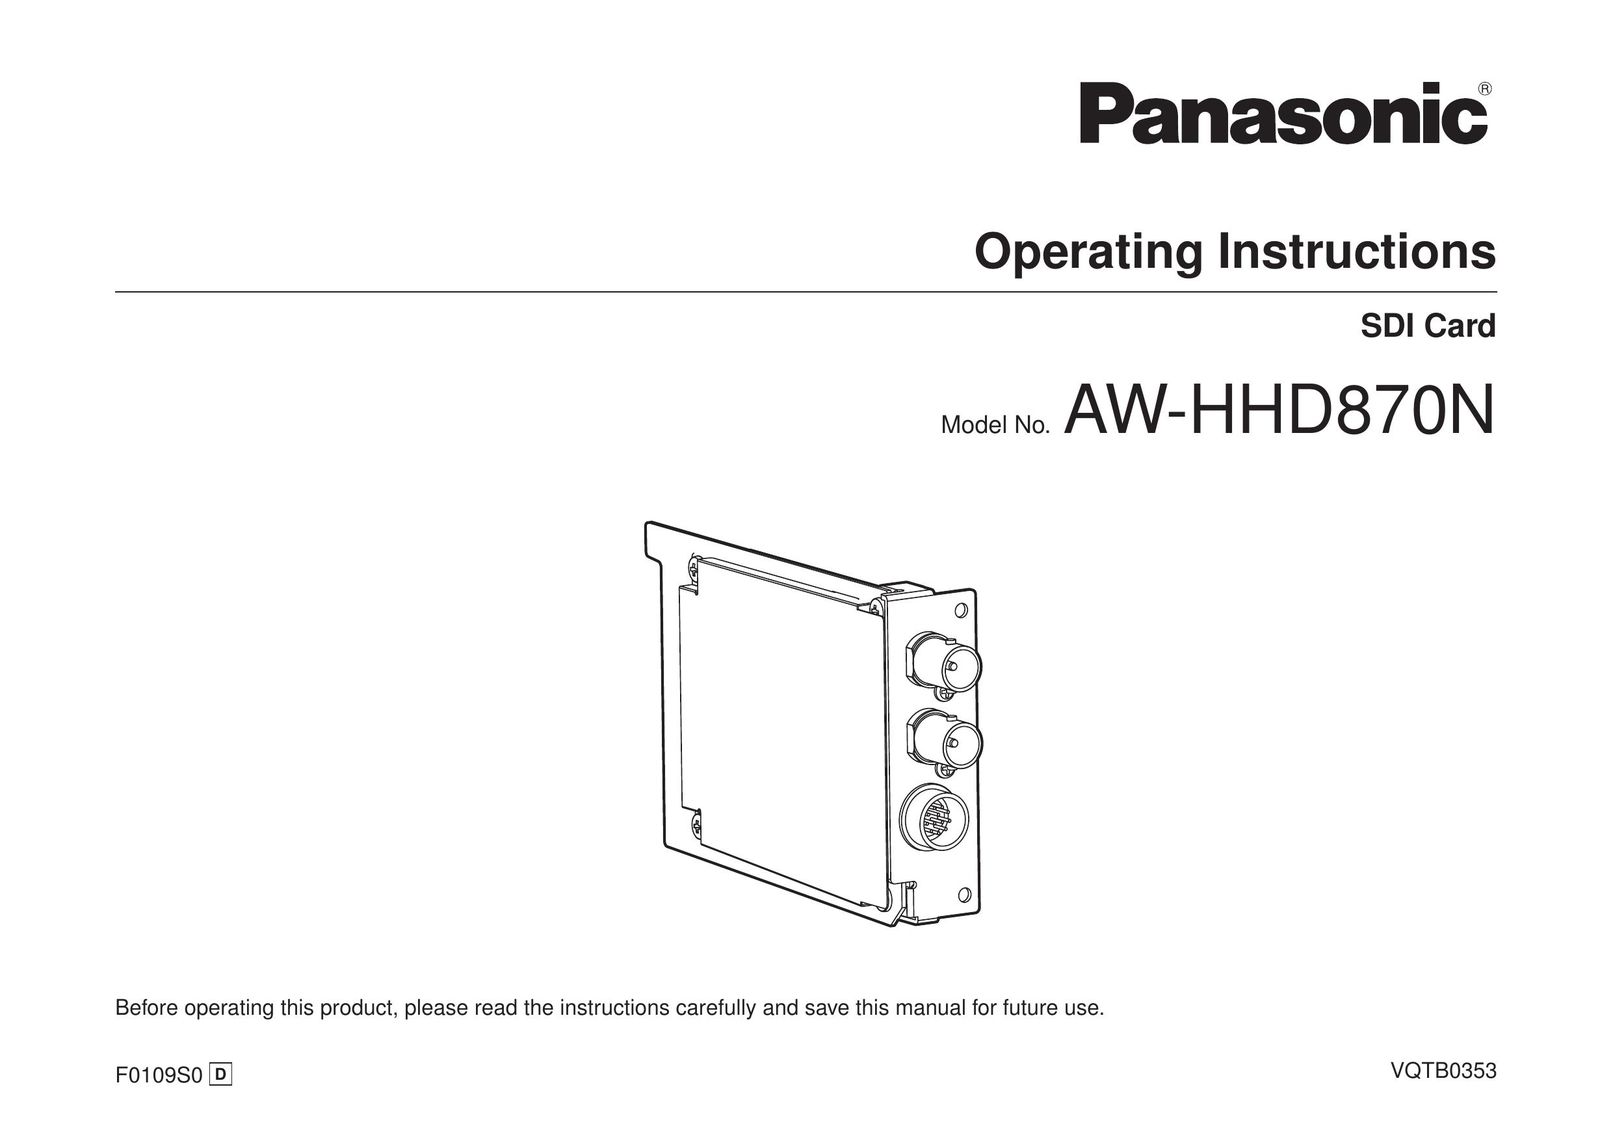 Panasonic AW-HHD870N Computer Hardware User Manual